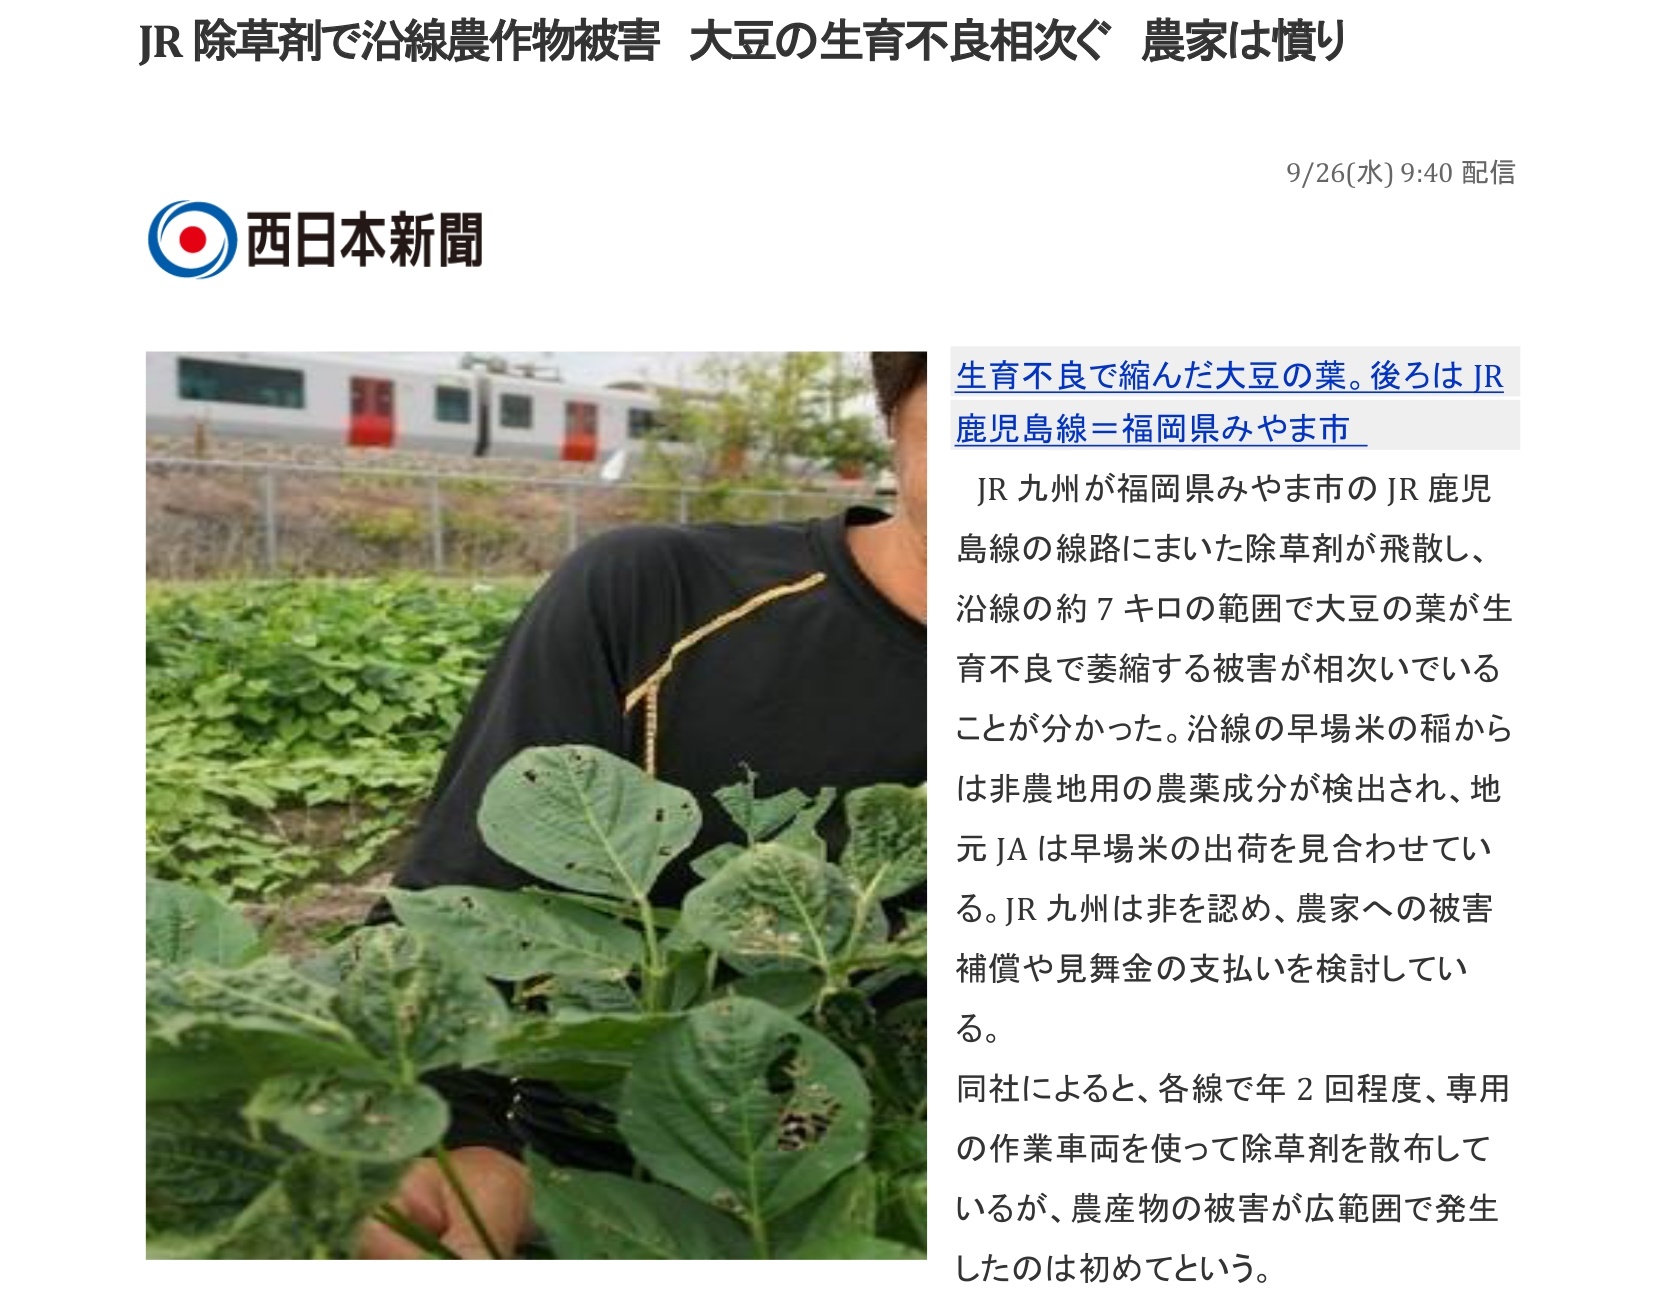 JR九州鉄道沿線での除草剤散布に伴うトラブル記事